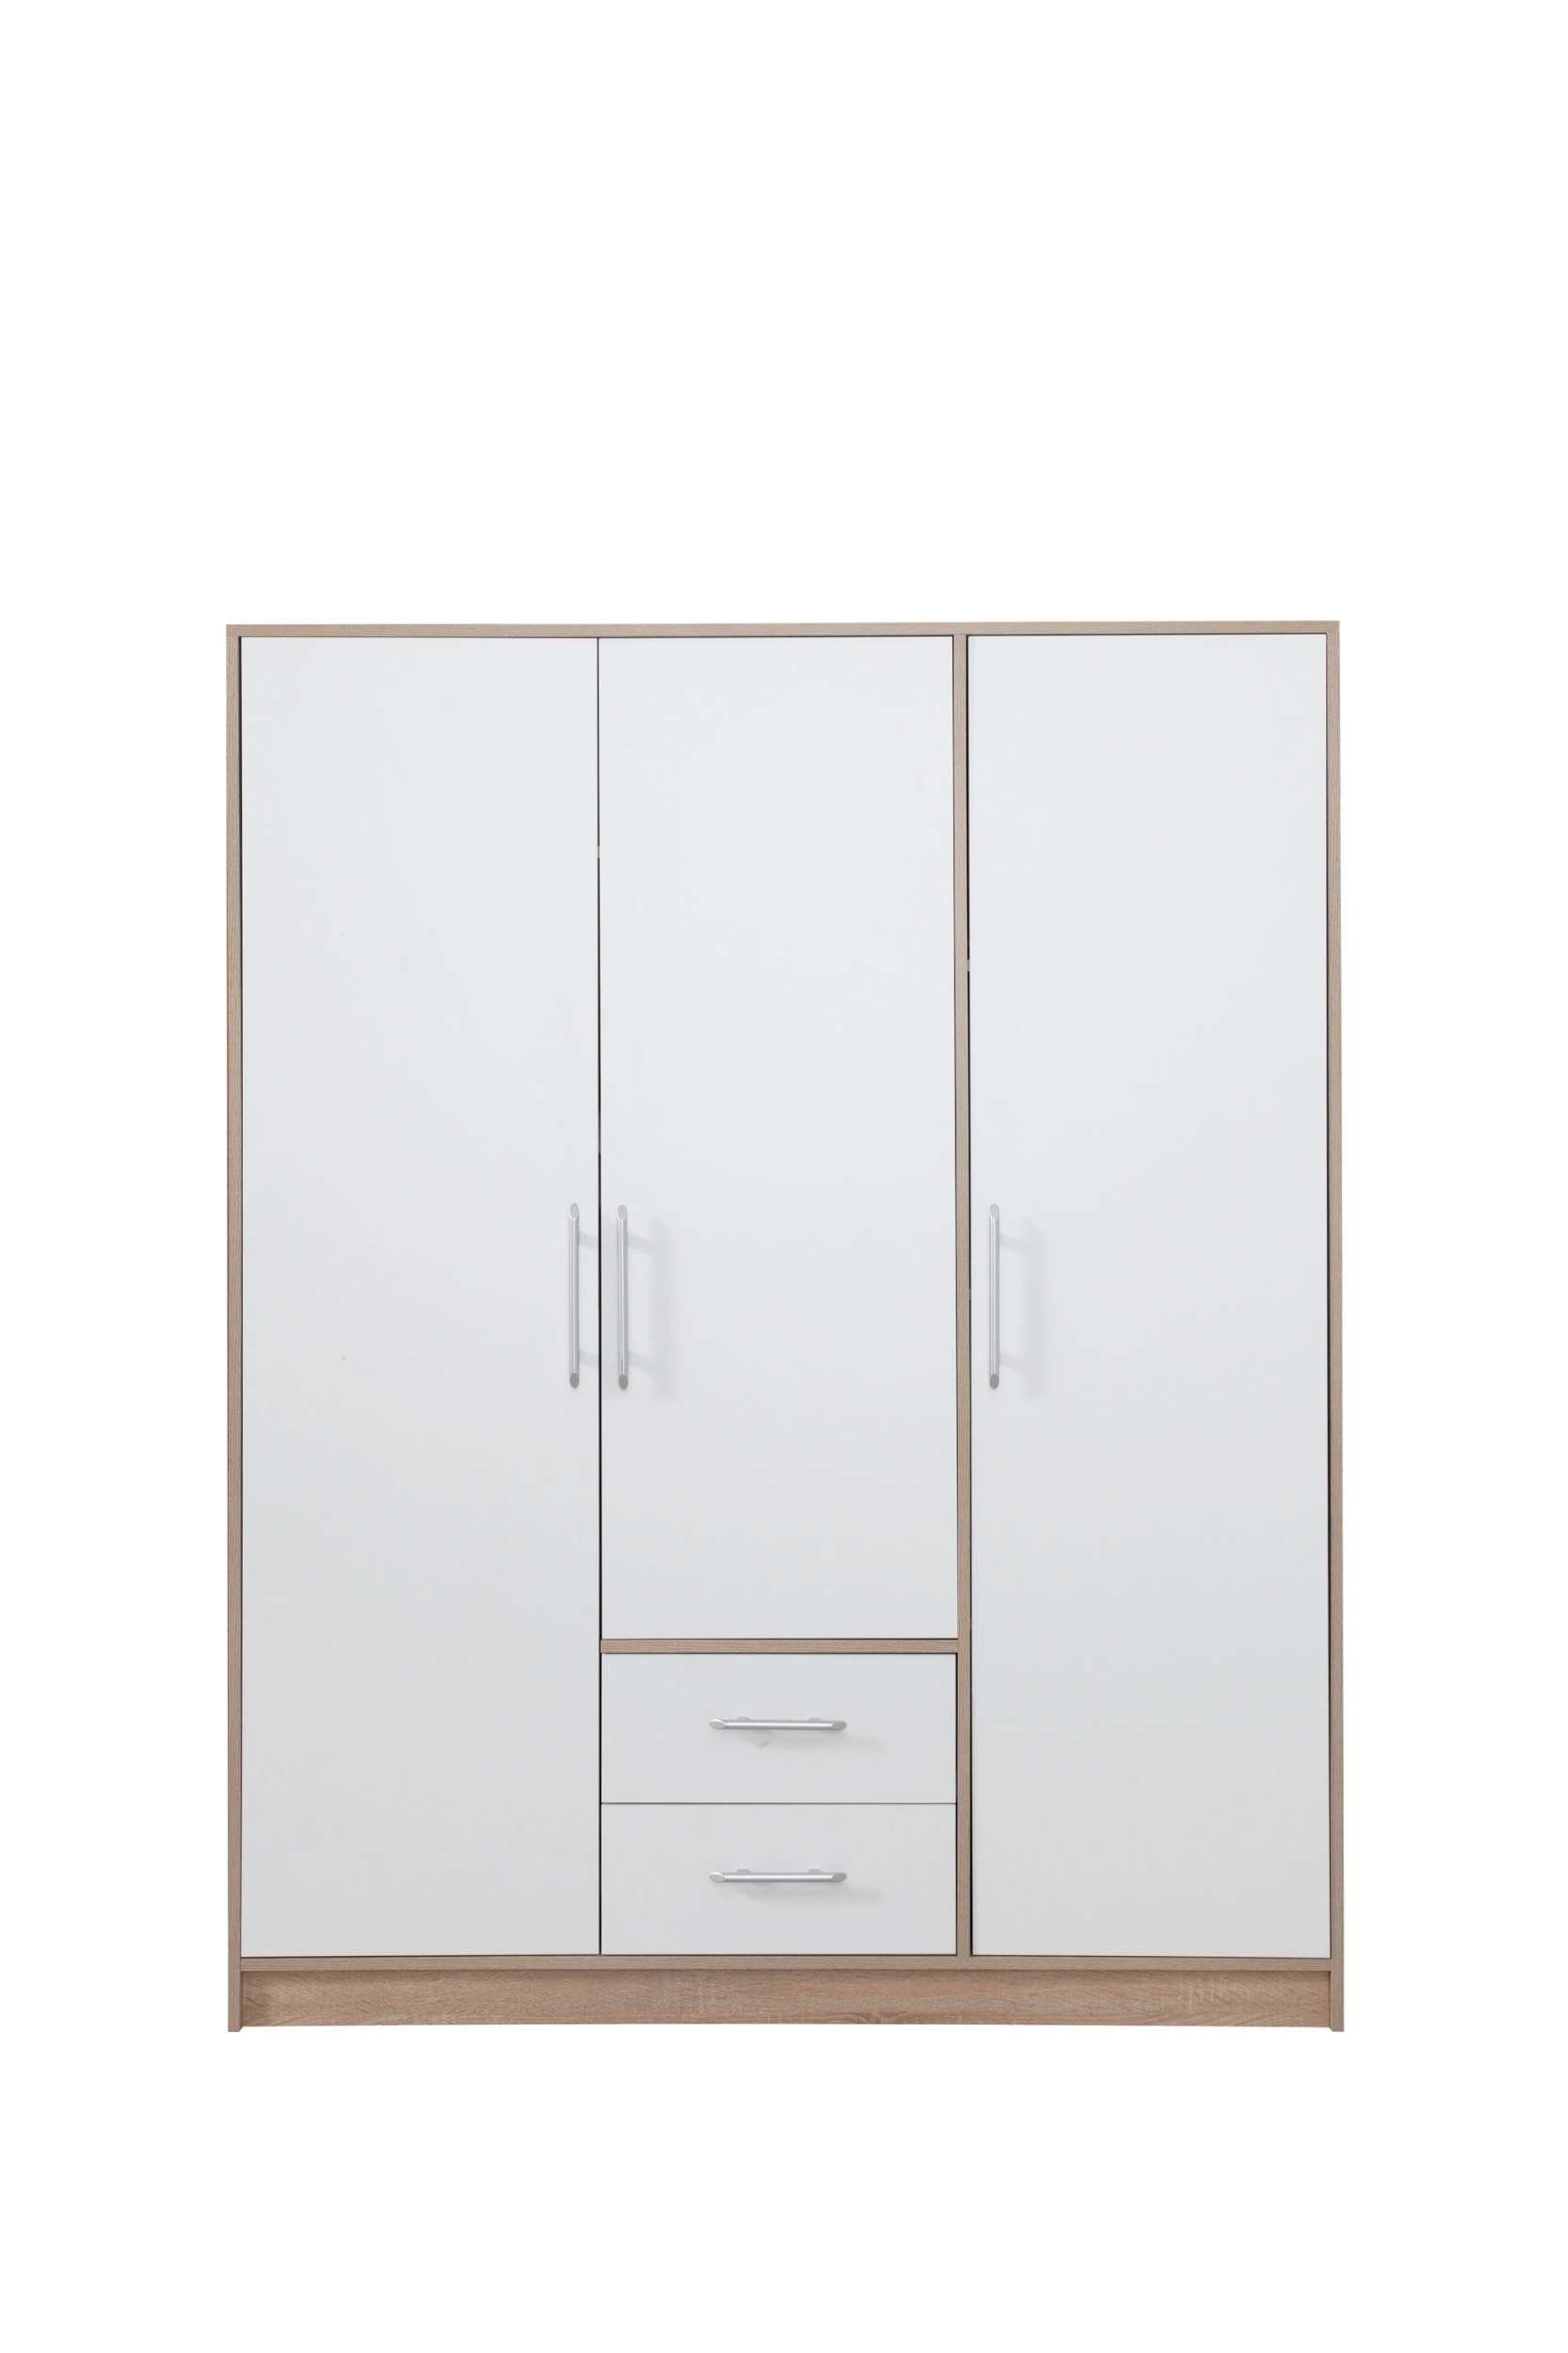 Stylefy Garderobenschrank Egon (Kinderschrank, Mehrzweckschrank) mit 5 Fächern und Schubladen, wahlweise mit Spiegel, viel Stauraum, FSC-Zertifizierung, Modern Design